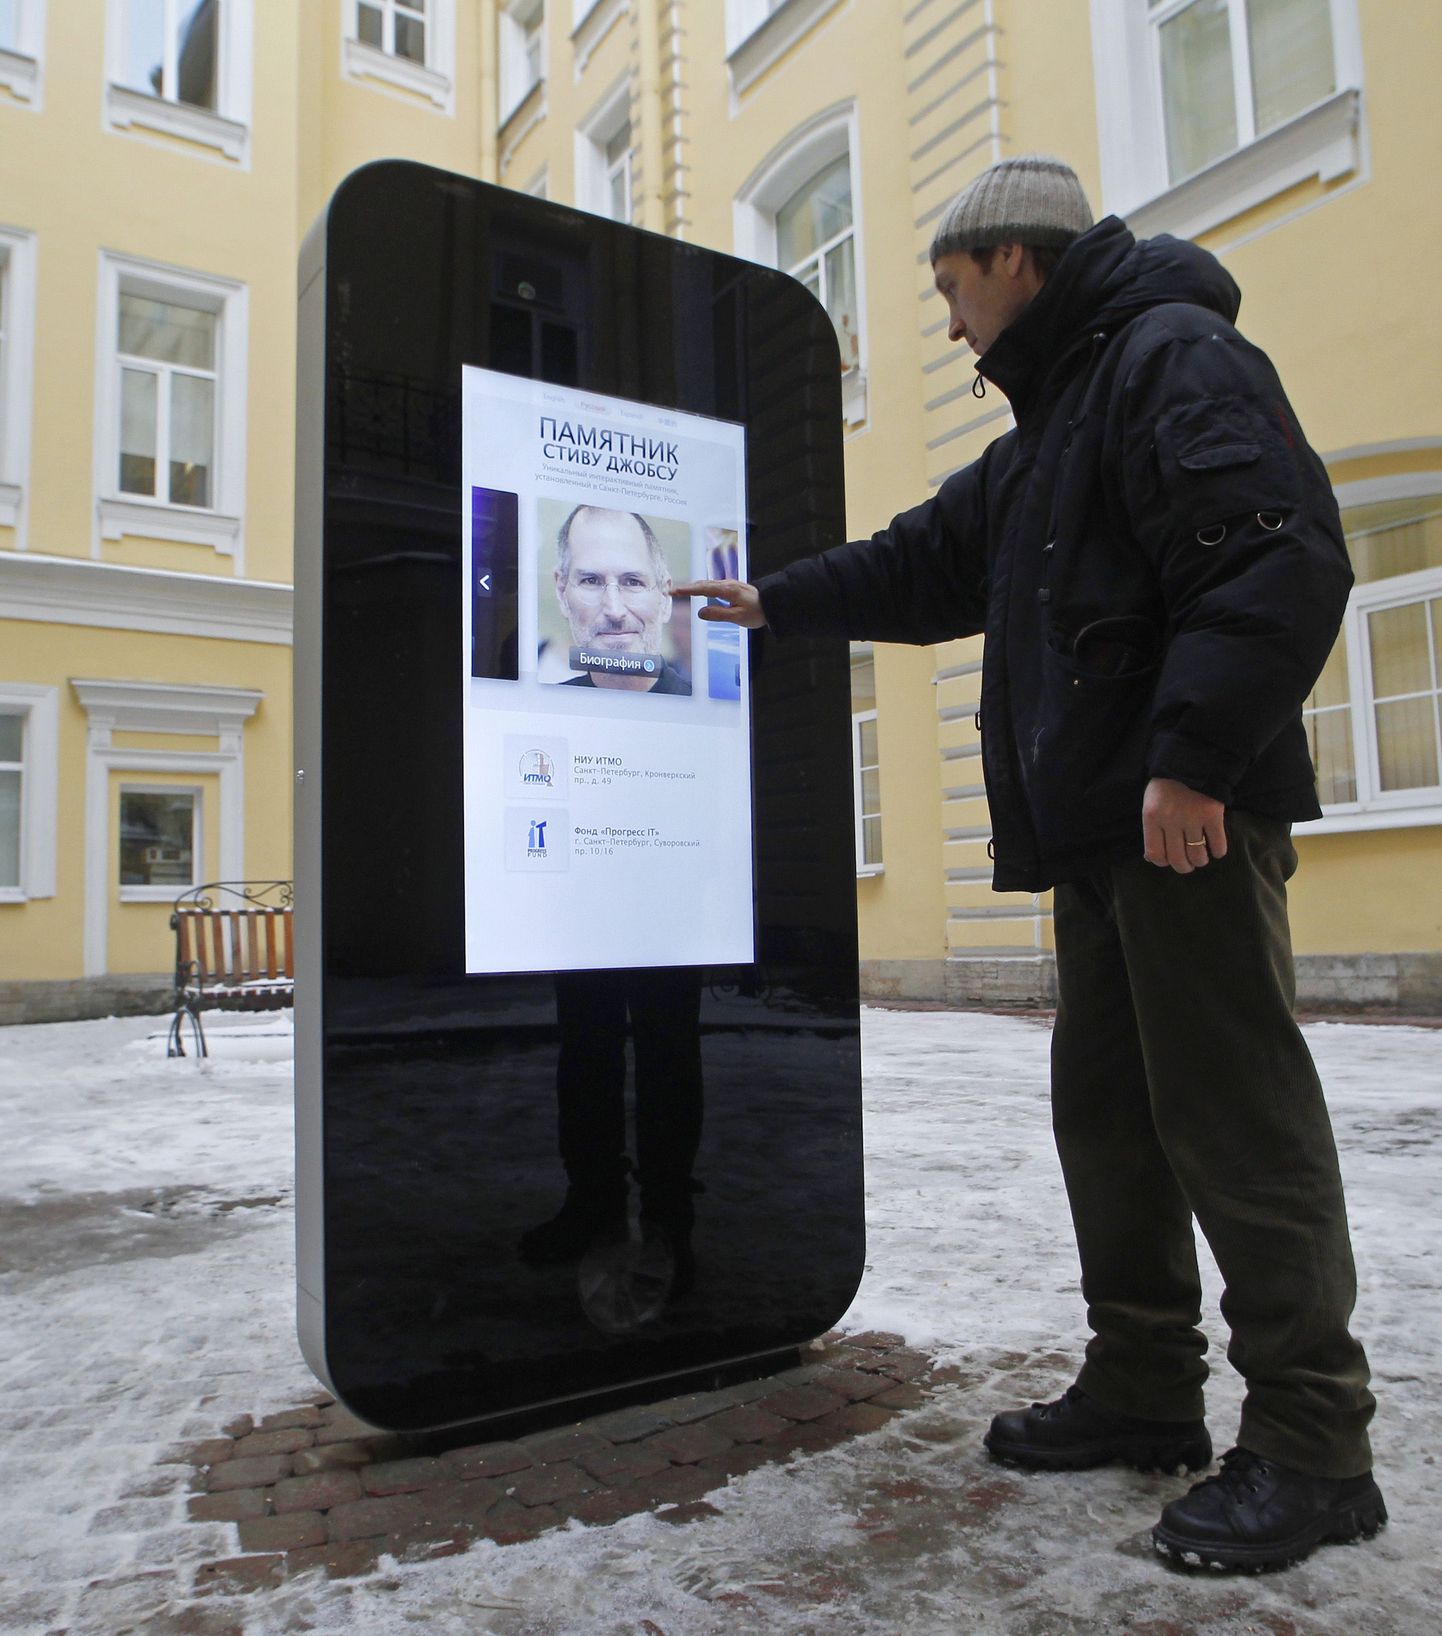 Steve Jobsi auks pandud interaktiivne iPhone´i mälestusmärk Peterburi tehnoloogiaülikooli juures